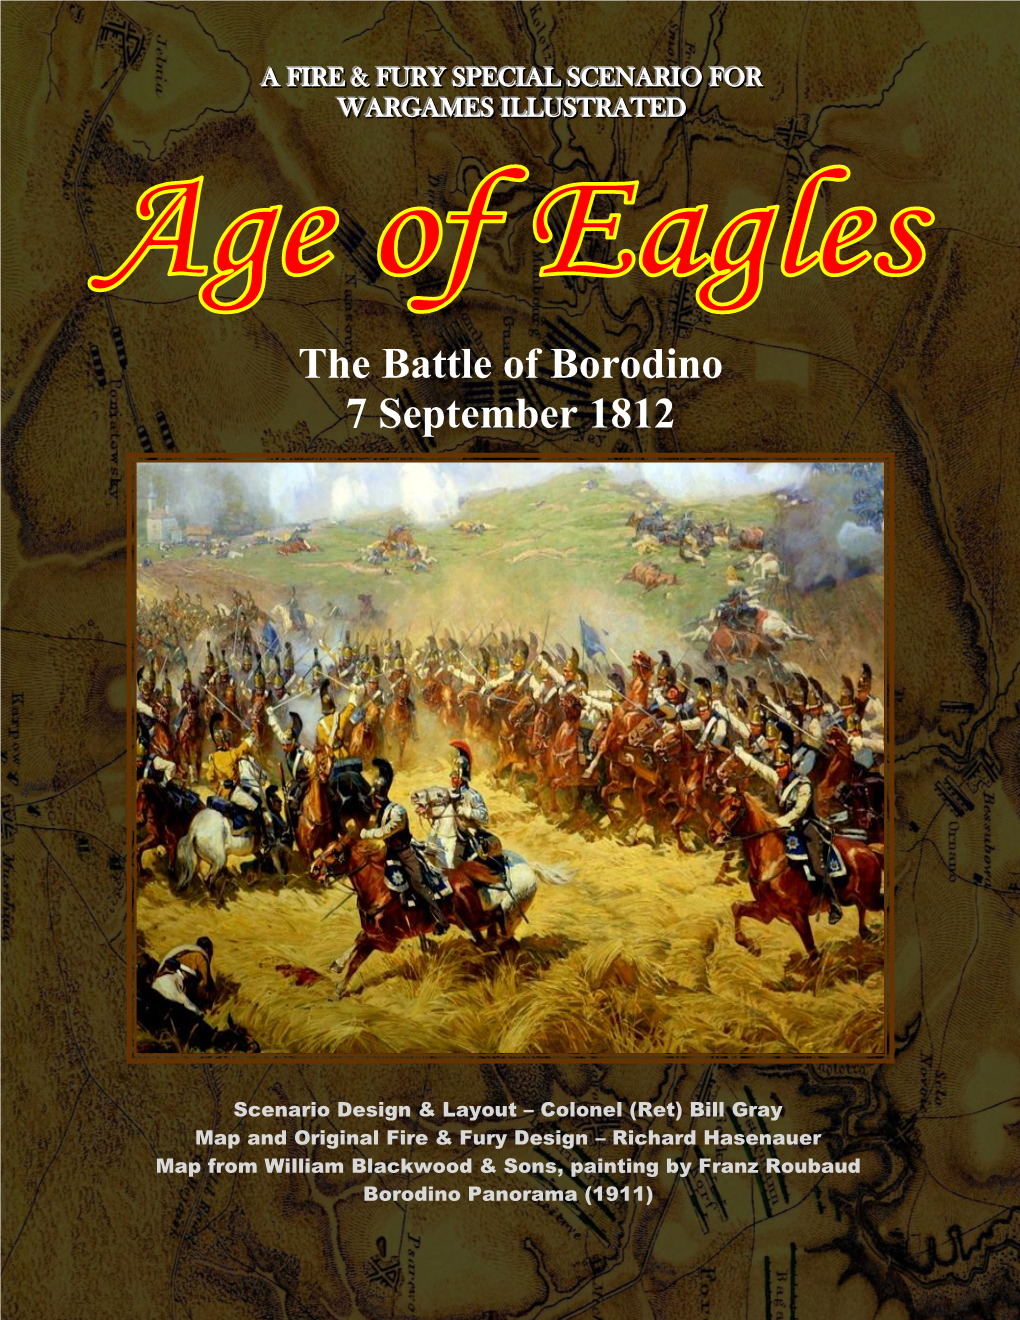 The Battle of Borodino 7 September 1812